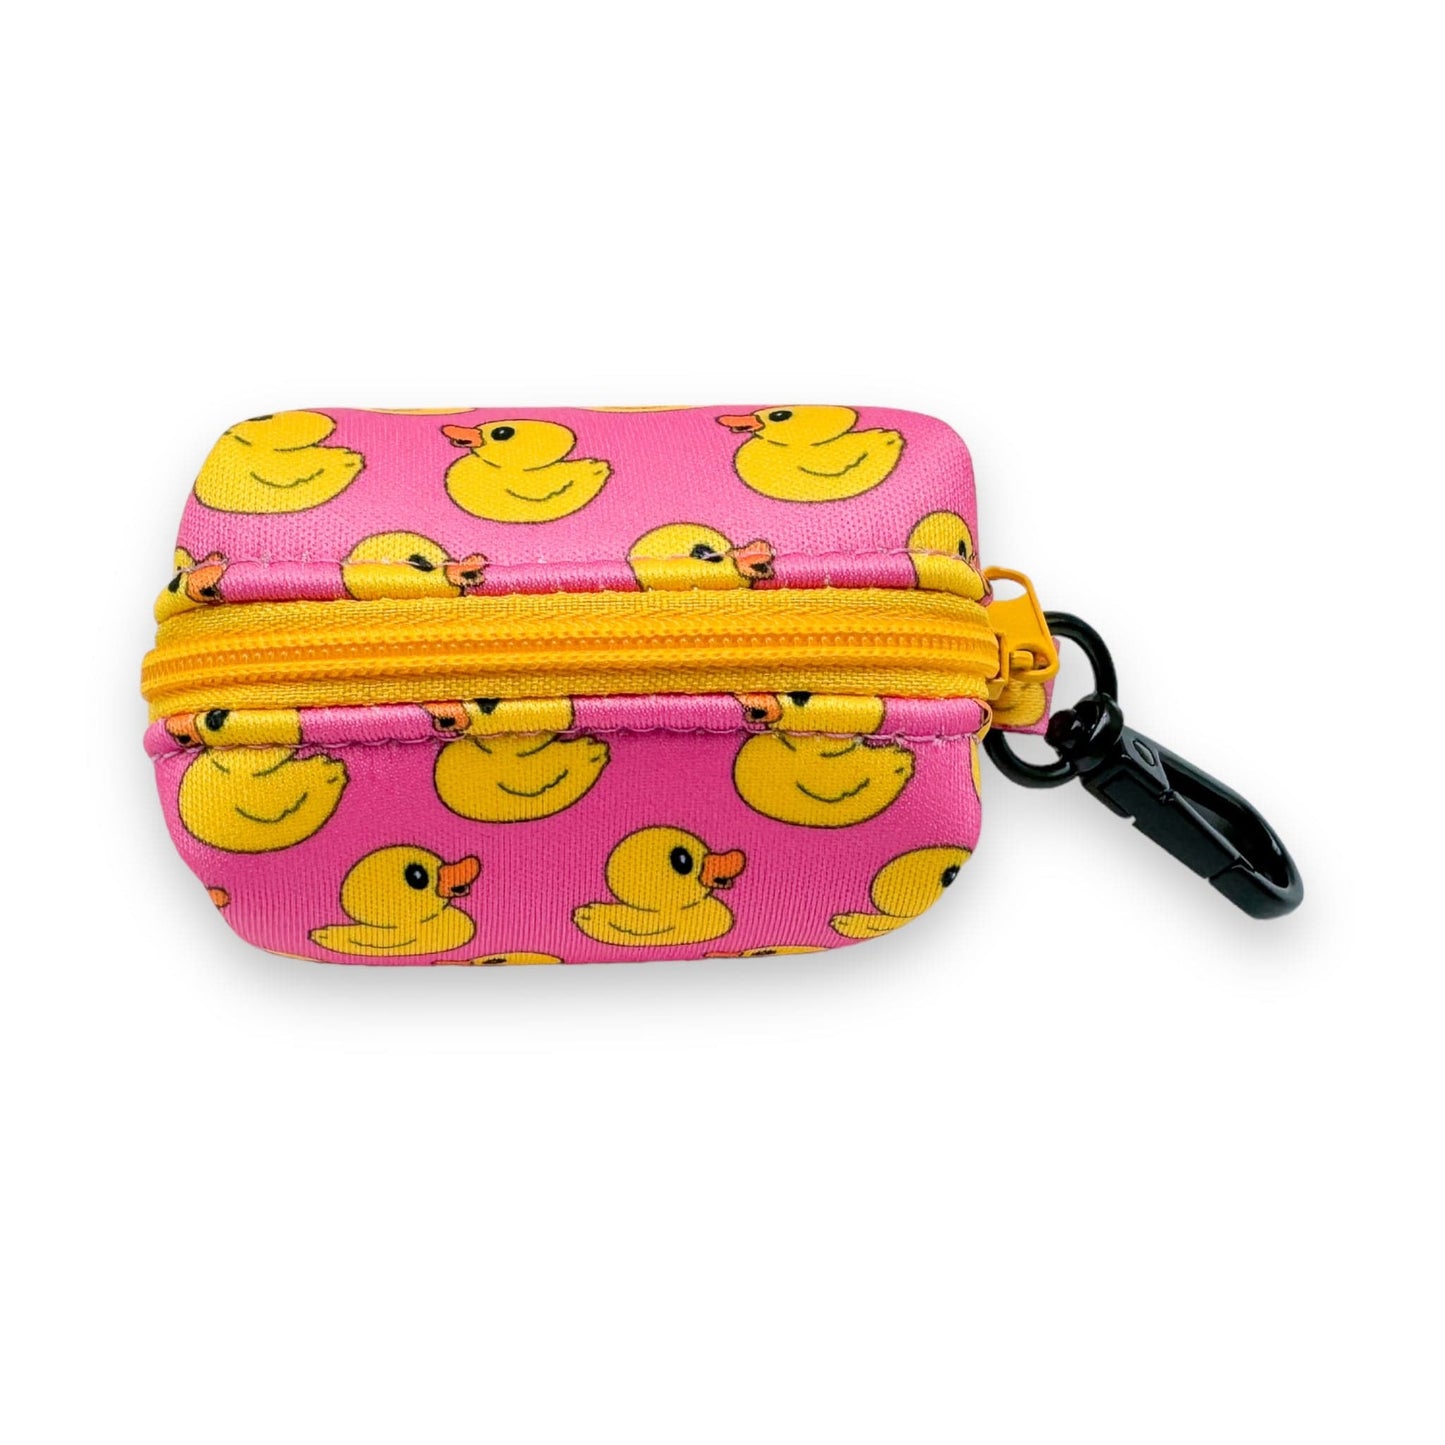 Zelda & Harley Poop Bag Holder Rubber Duckie Waste Bag Holder - Pink